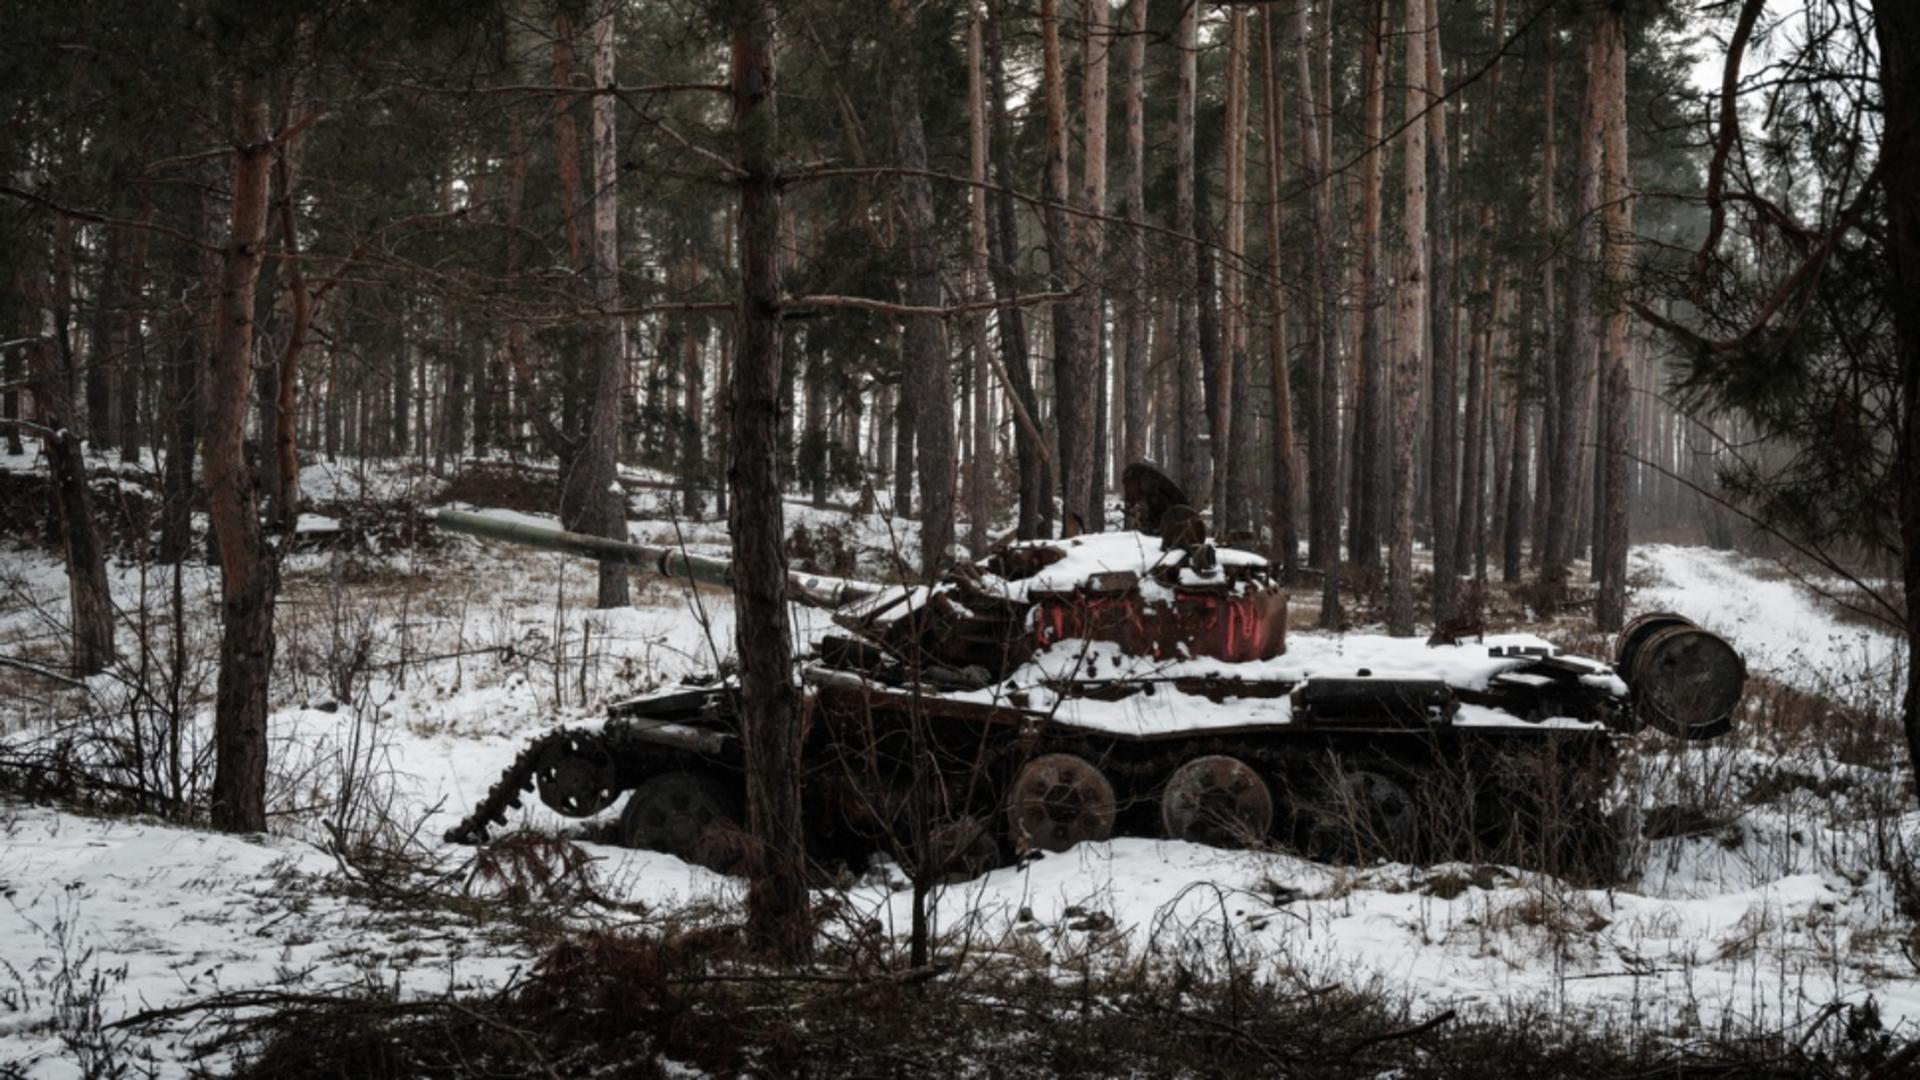 Război în Ucraina, ziua 349. Semnale că Moscova pregătește o nouă ofensivă / Foto: Profi Media